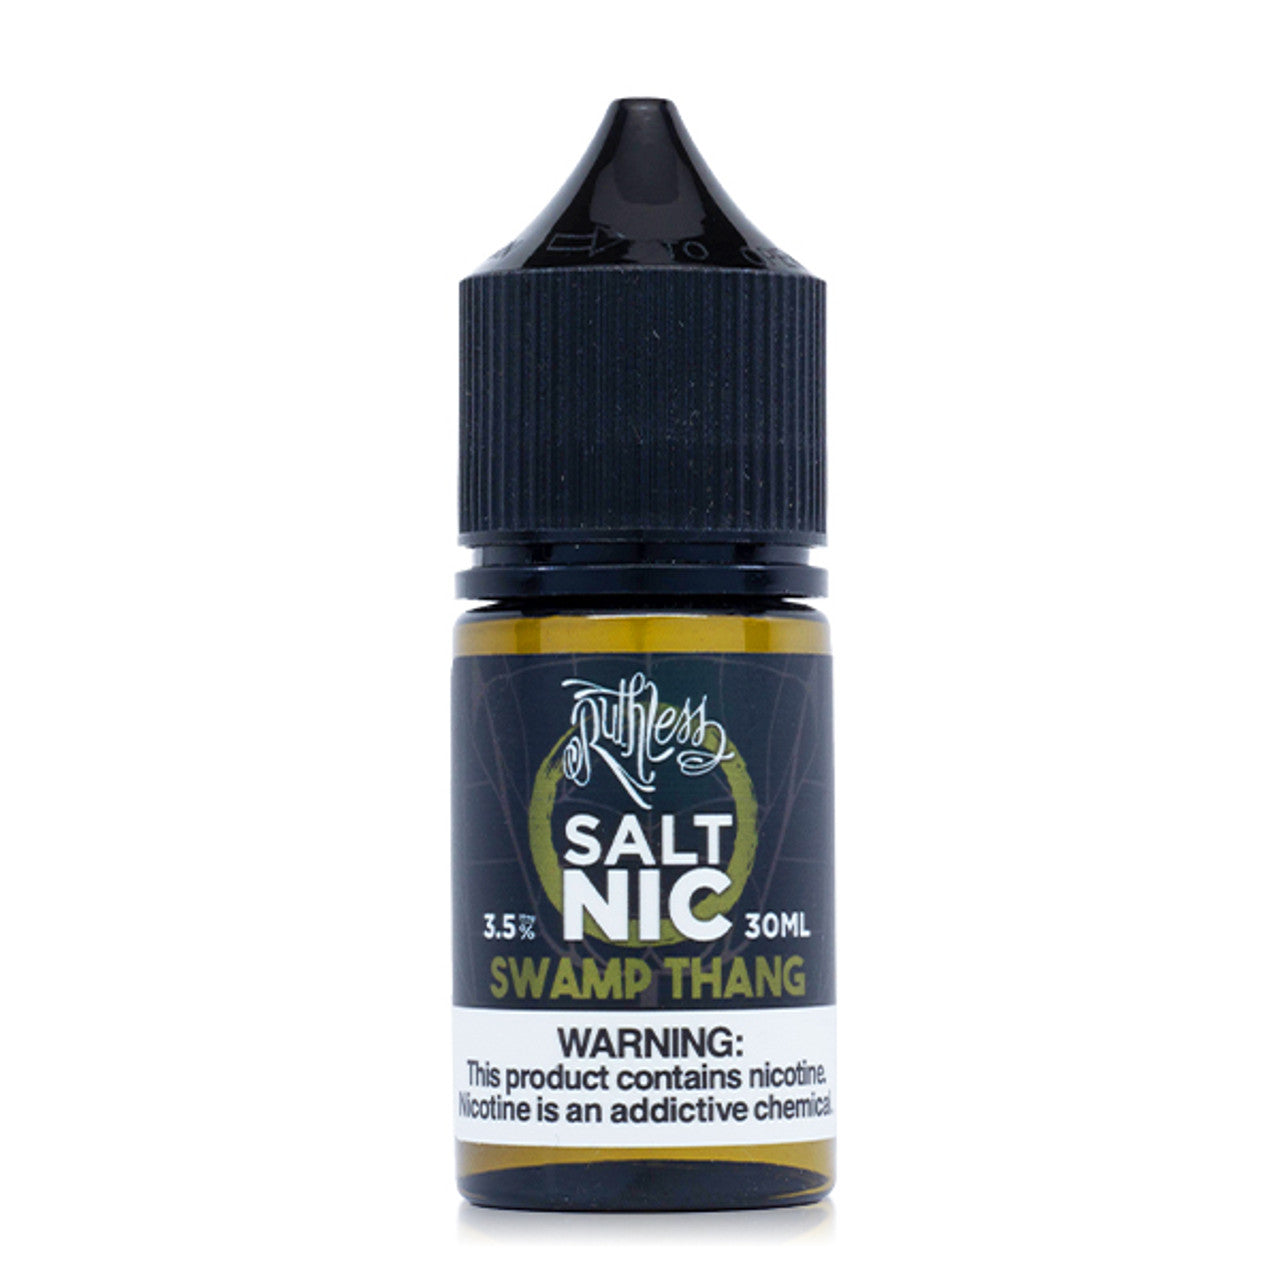 Ruthless Salt Series E-Liquid 30mL (Salt Nic) Swamp Thang